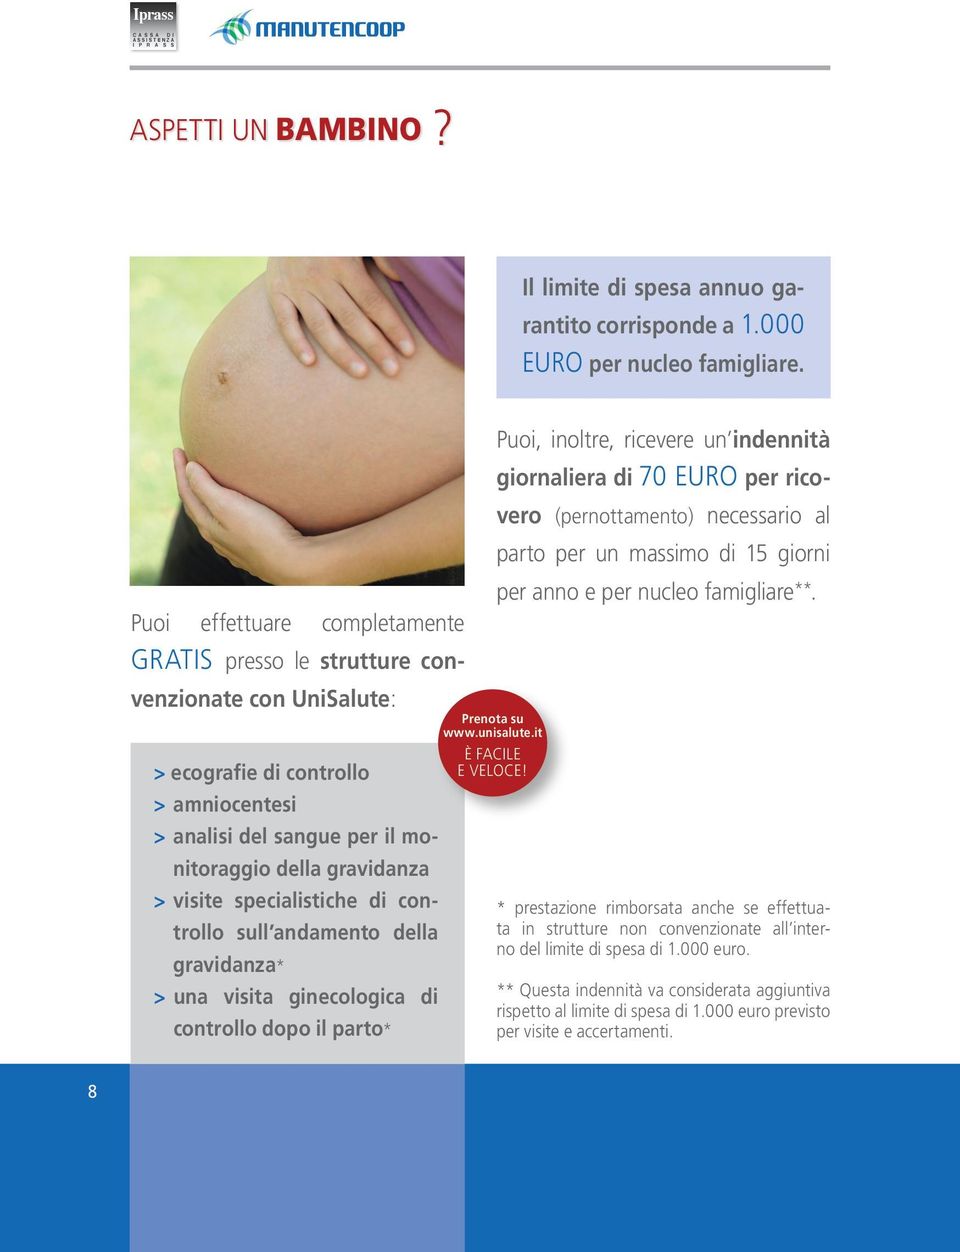 specialistiche di controllo sull andamento della gravidanza* > una visita ginecologica di controllo dopo il parto* Puoi, inoltre, ricevere un indennità giornaliera di 70 EURO per ricovero